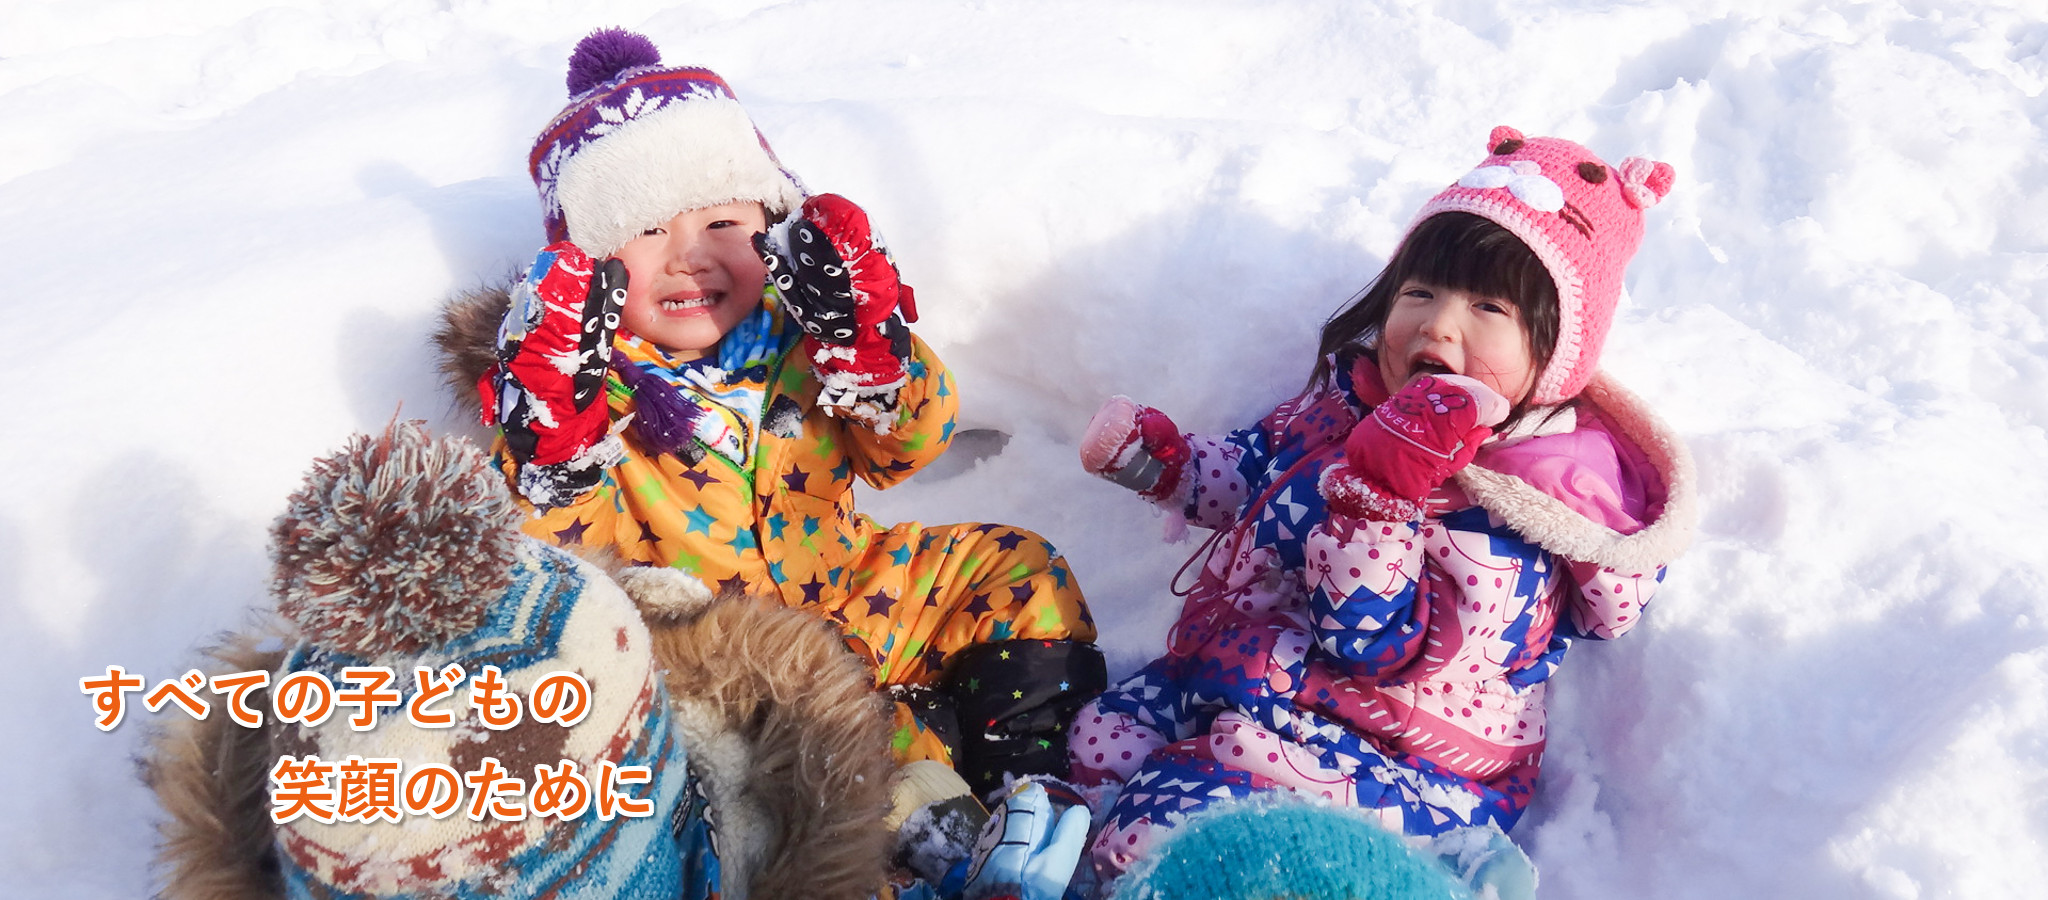 雪の中で遊ぶ子ども